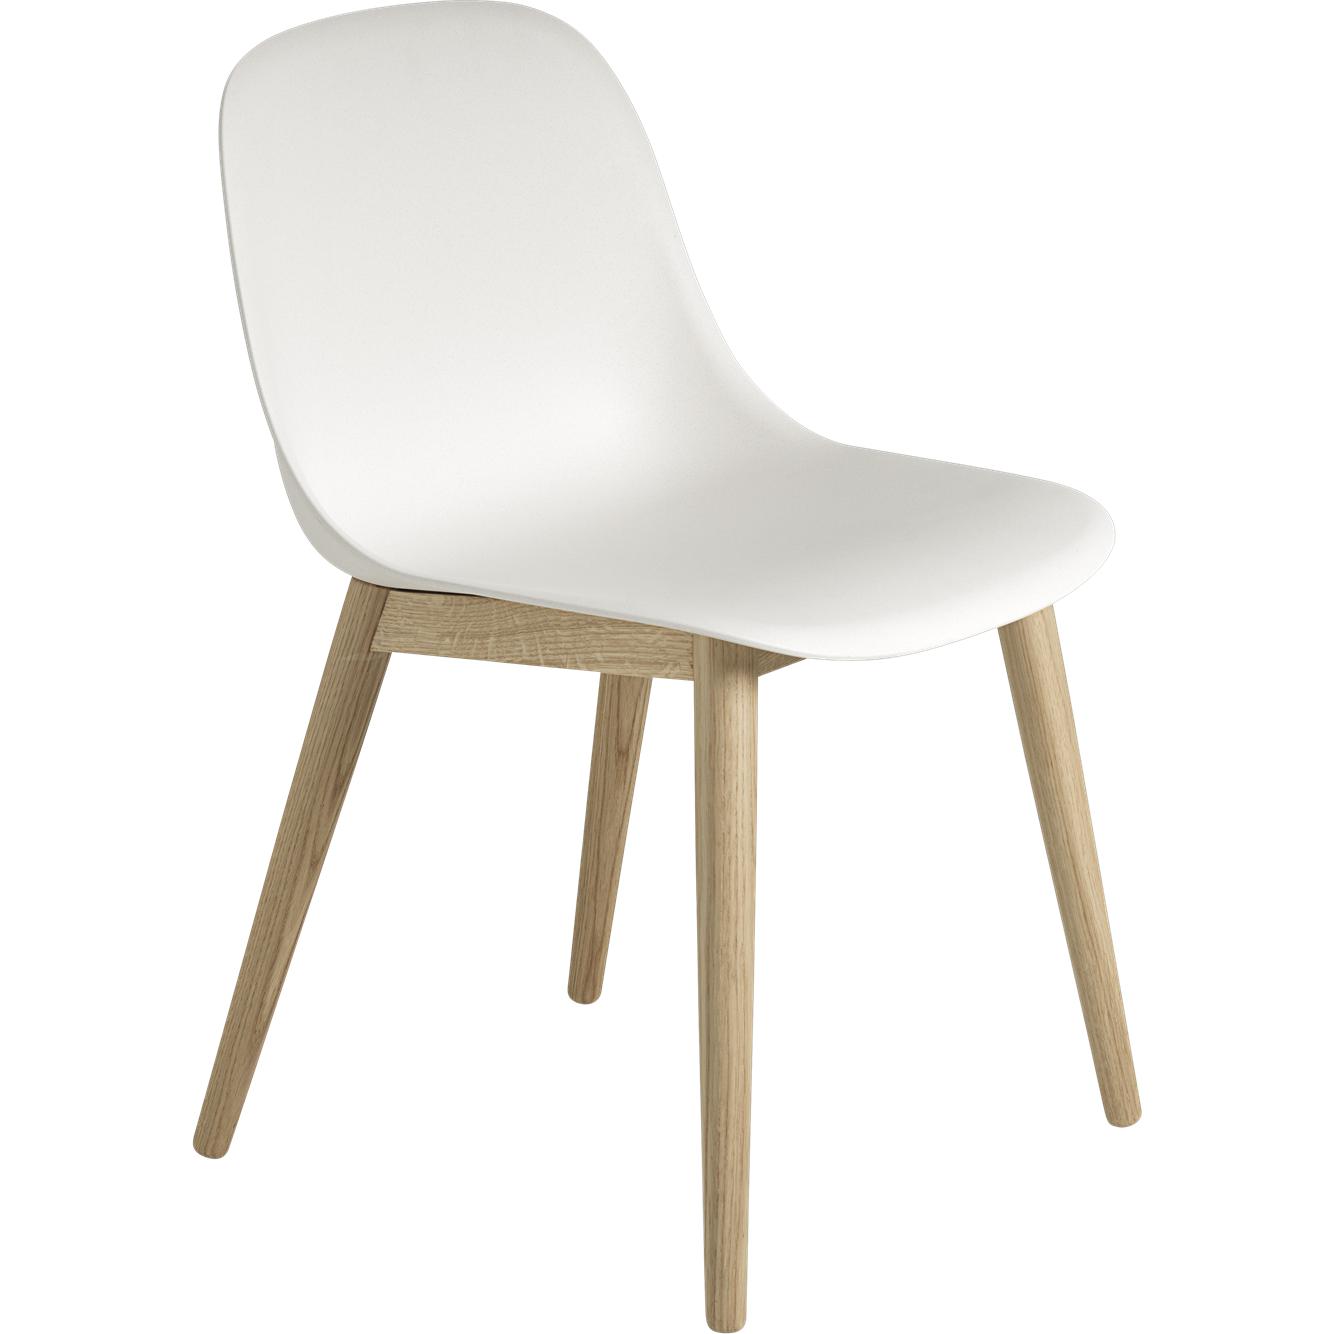 Muuto Vezelzijde stoel houten benen, vezelstoel, wit/eiken